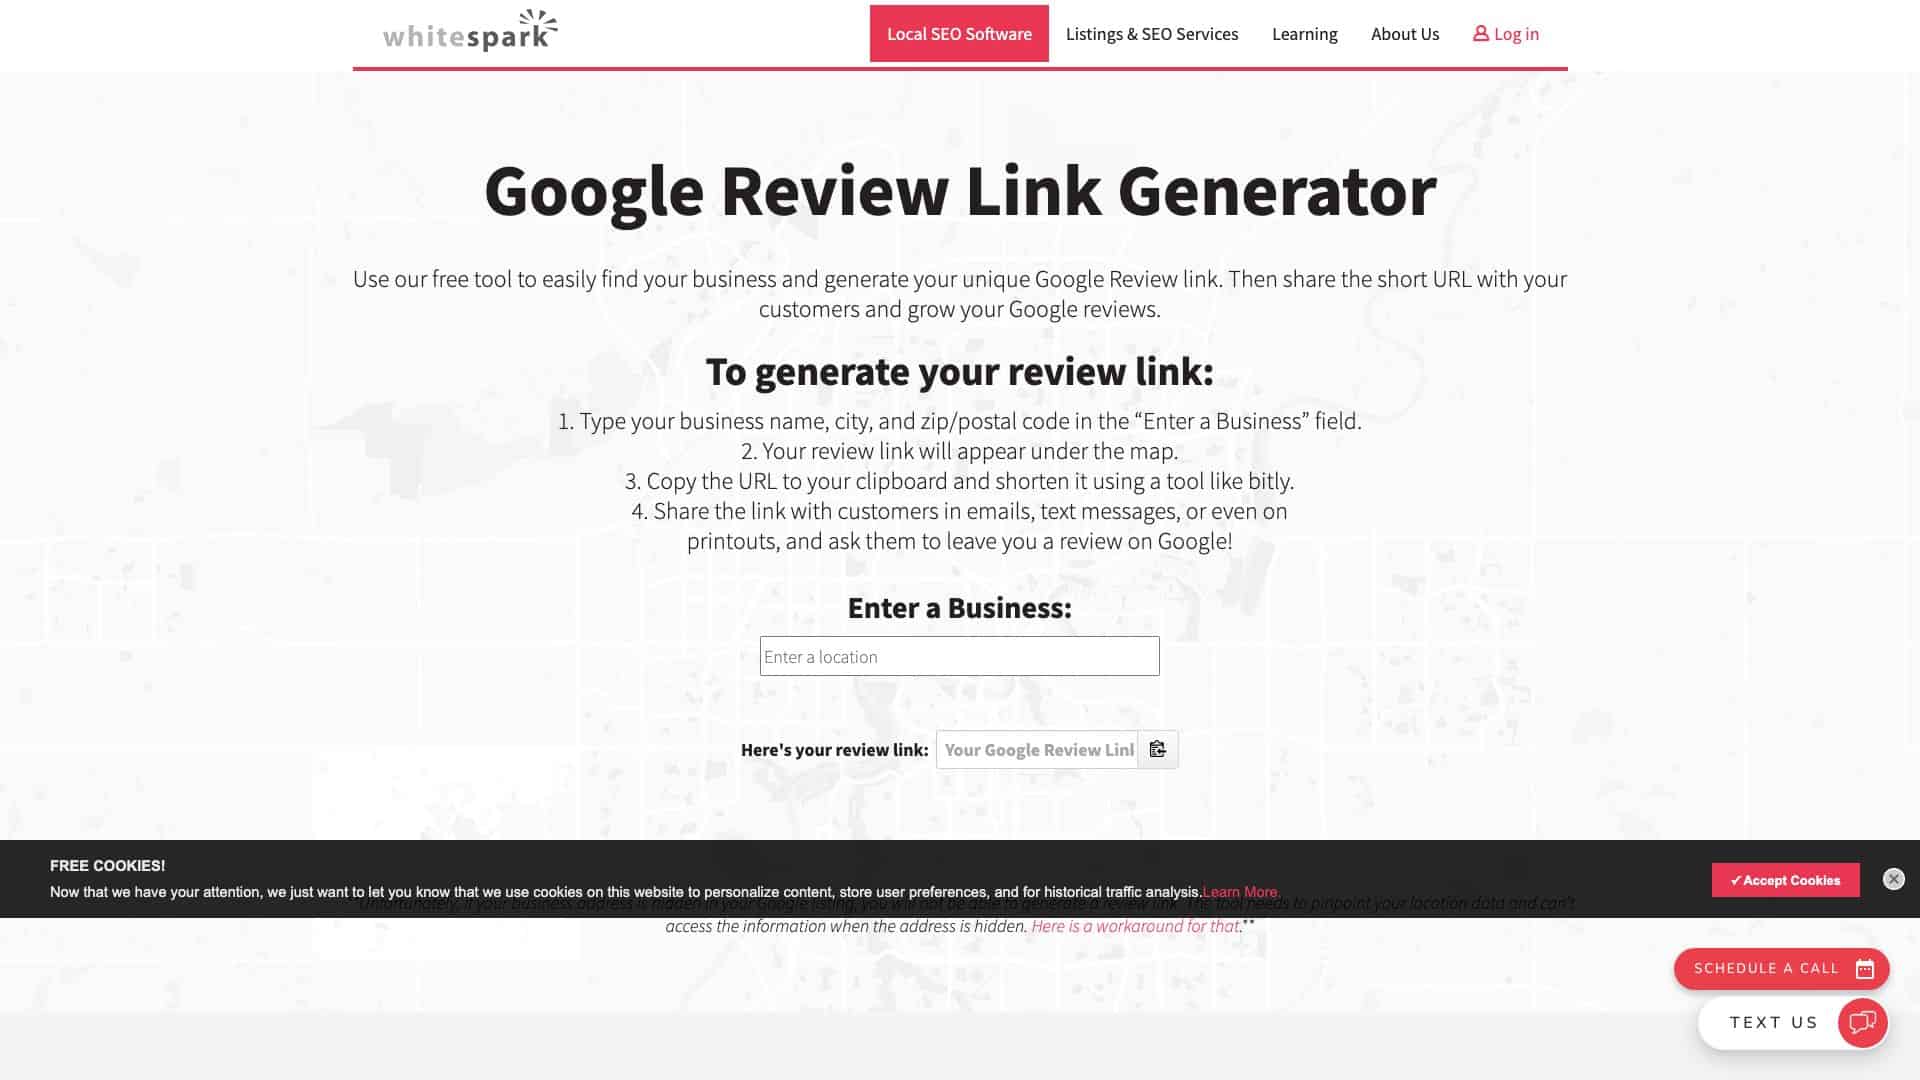 whitespark ca google review link generator 1643925676803